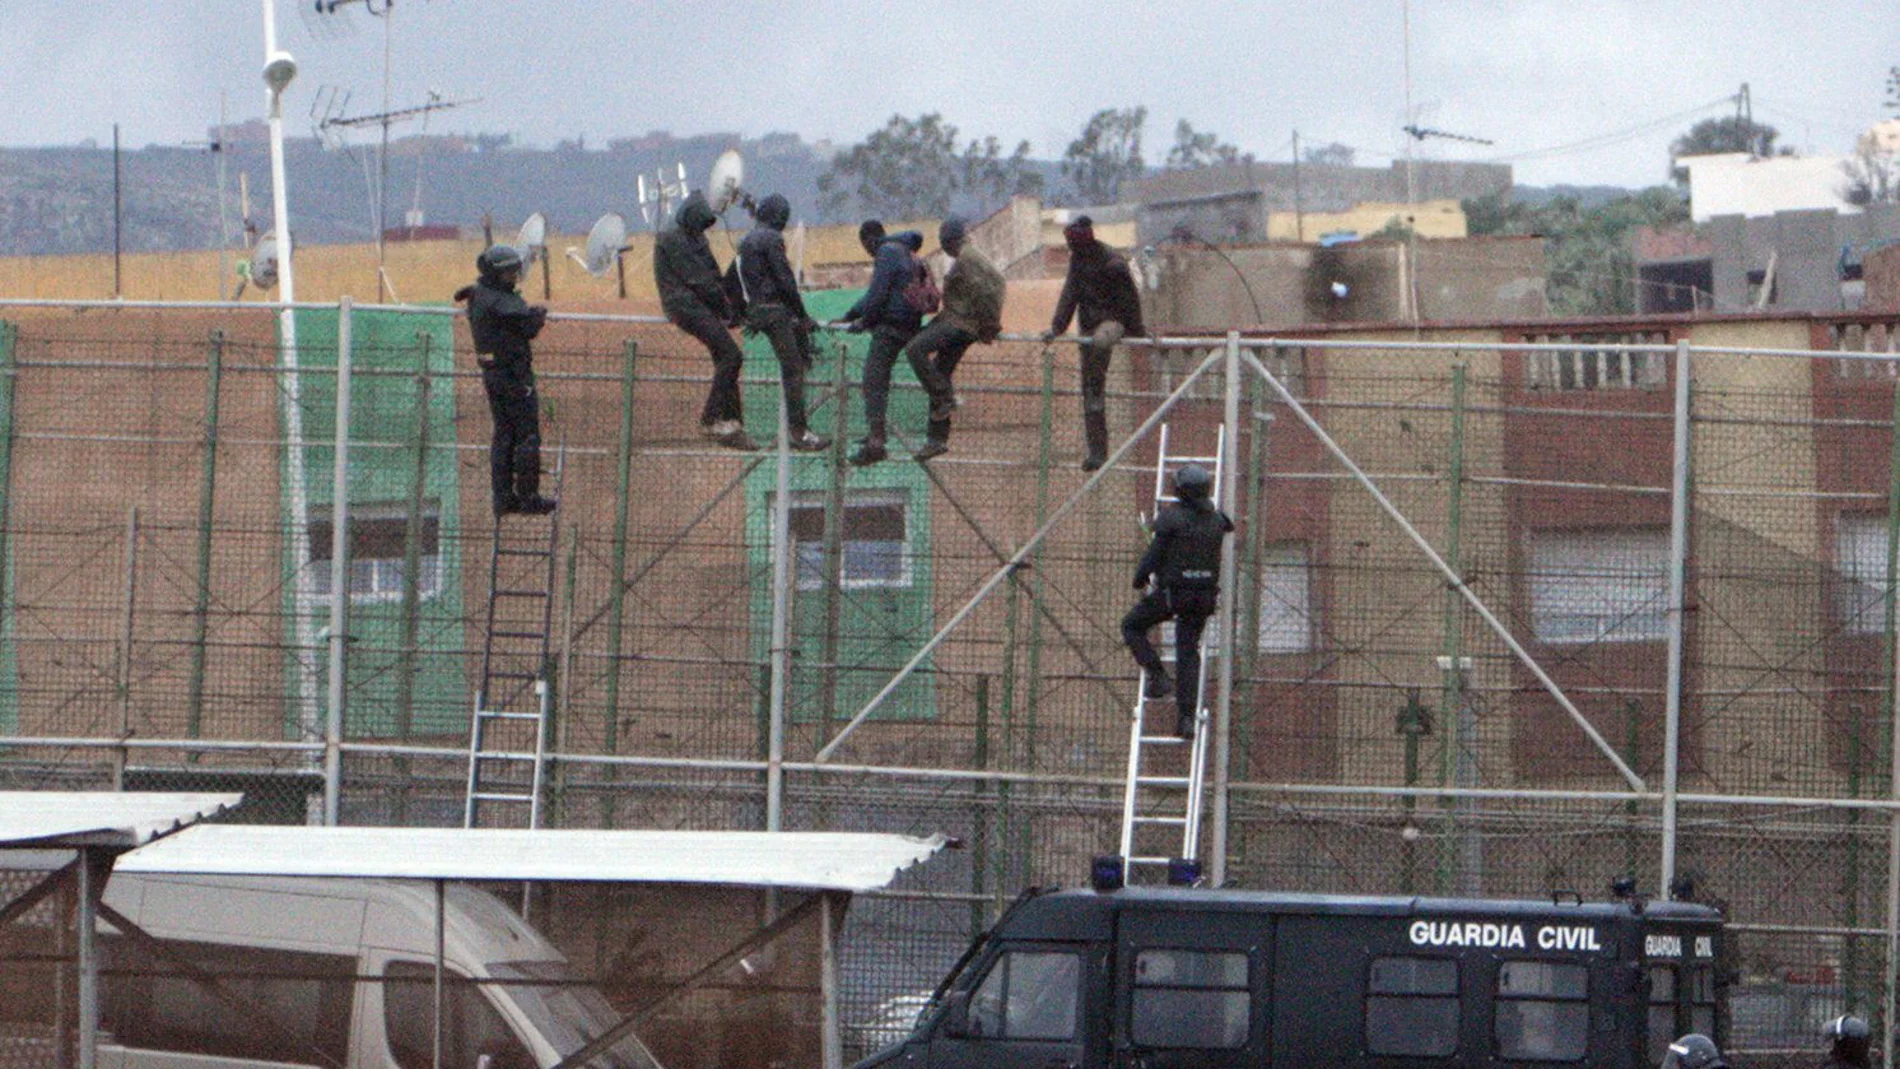 Imagen de archivo de migrantes subidos a la valla de Melilla